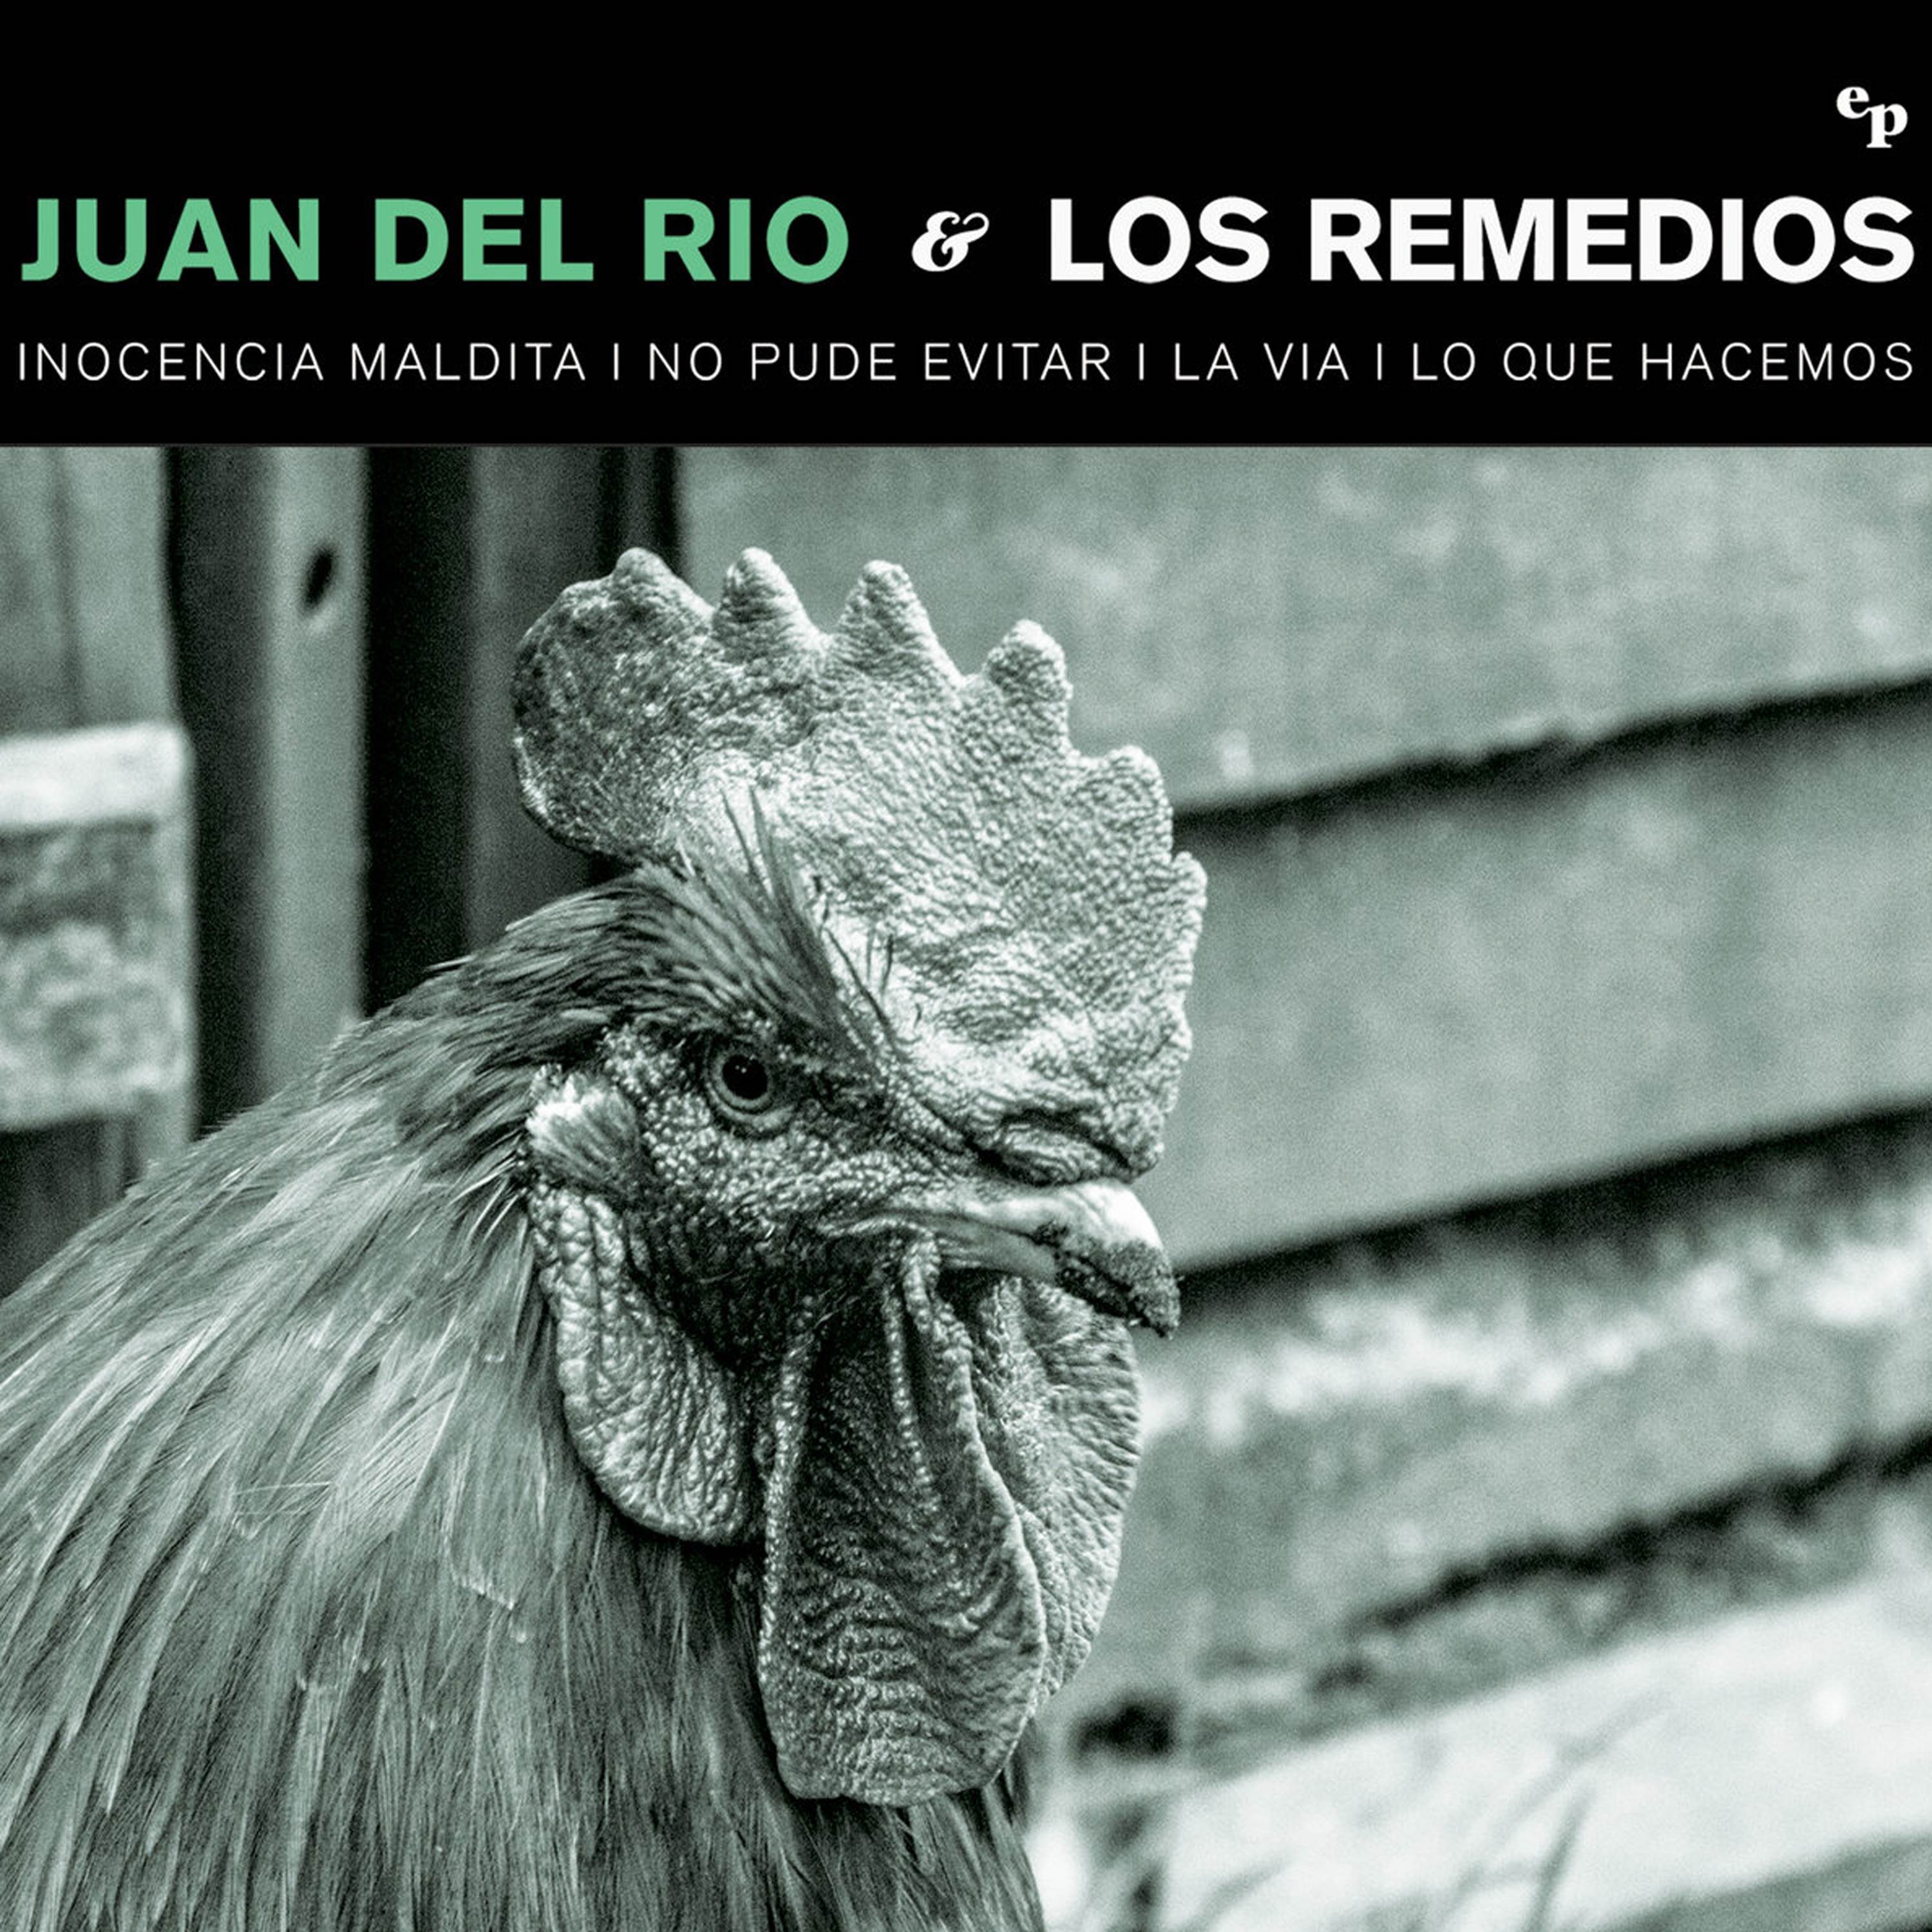 Juan del Rio & Los Remedios